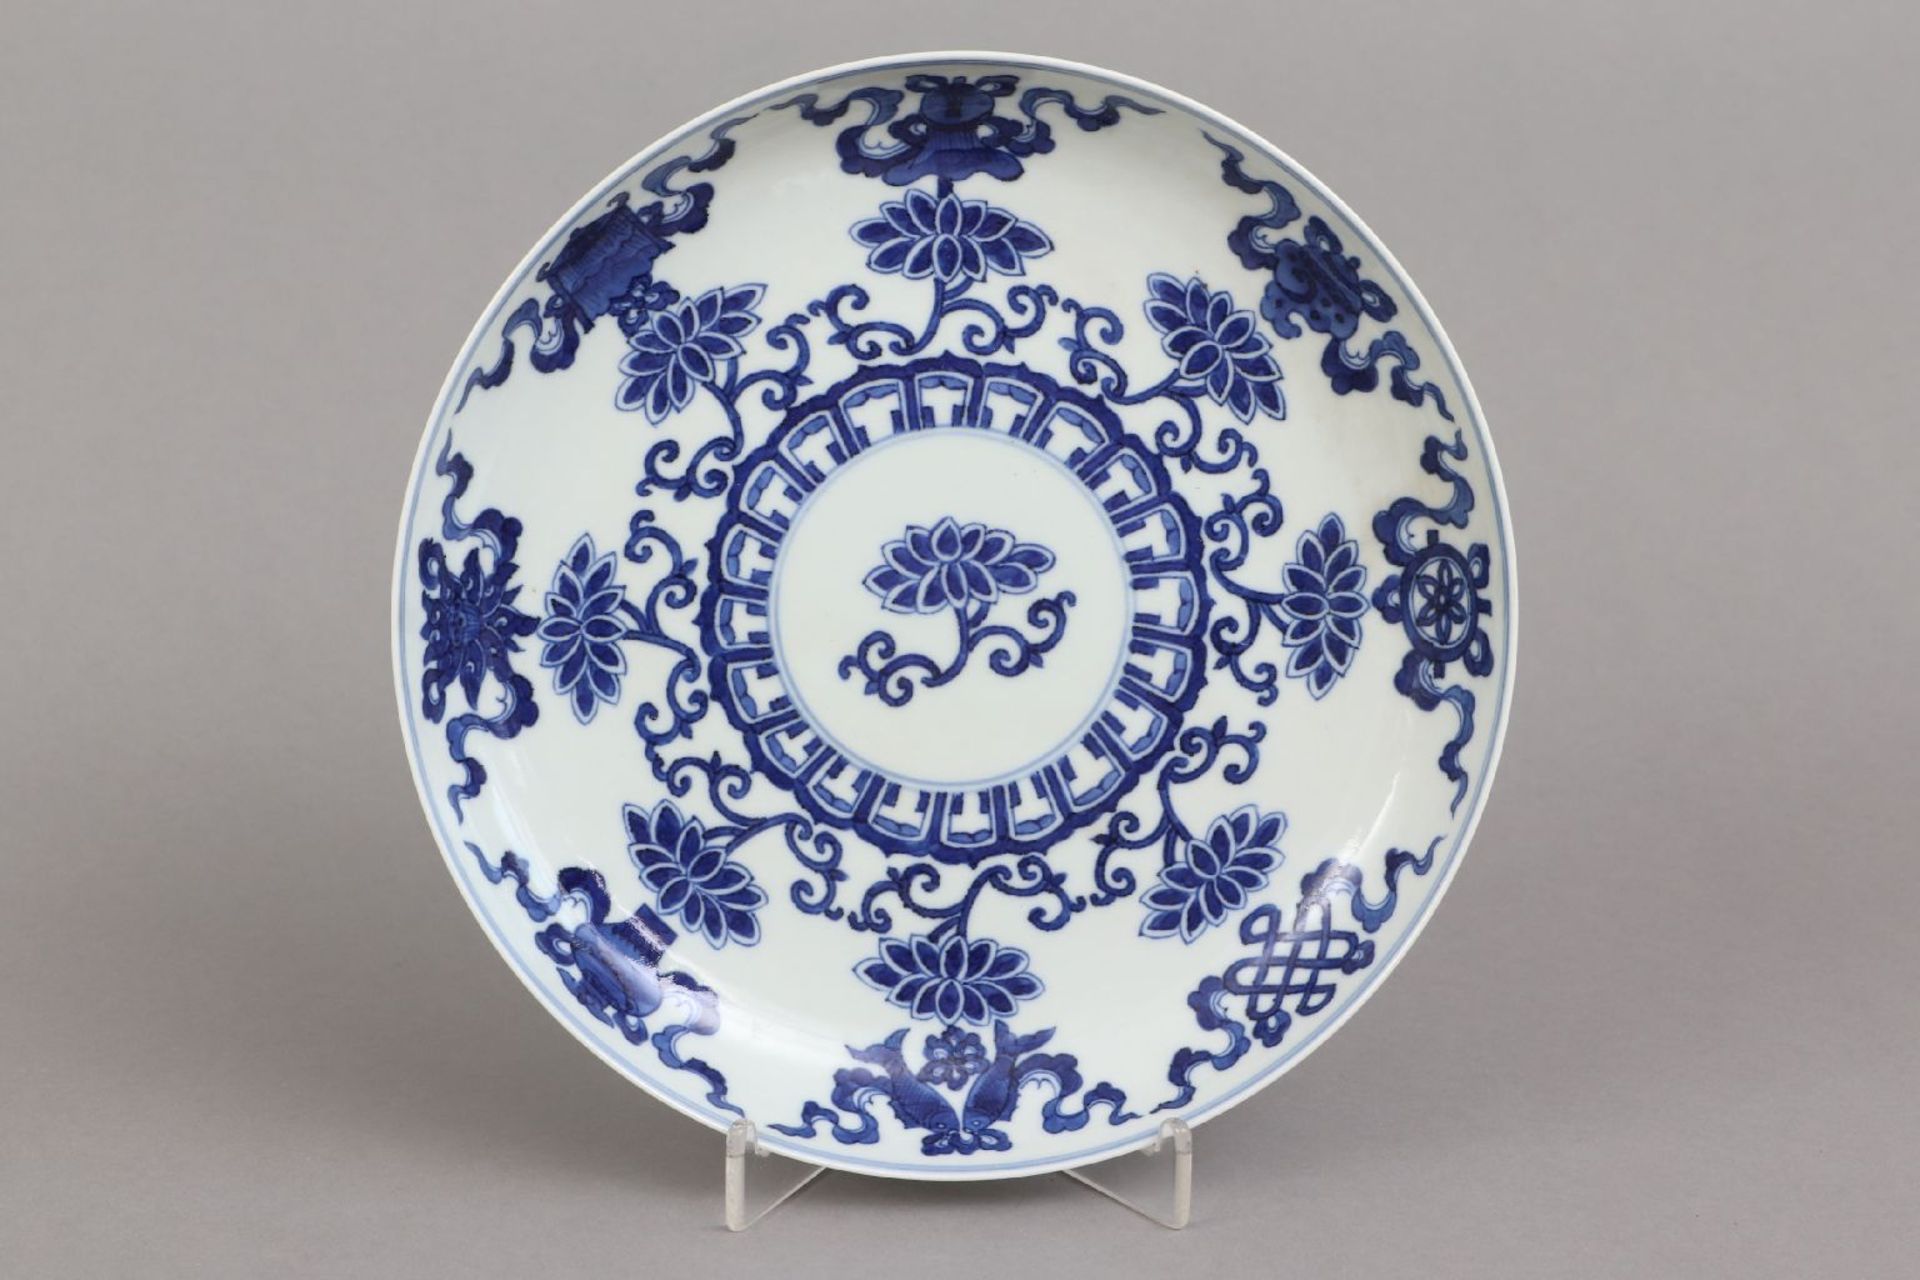 Chinesischer Teller mit Blaumalerei